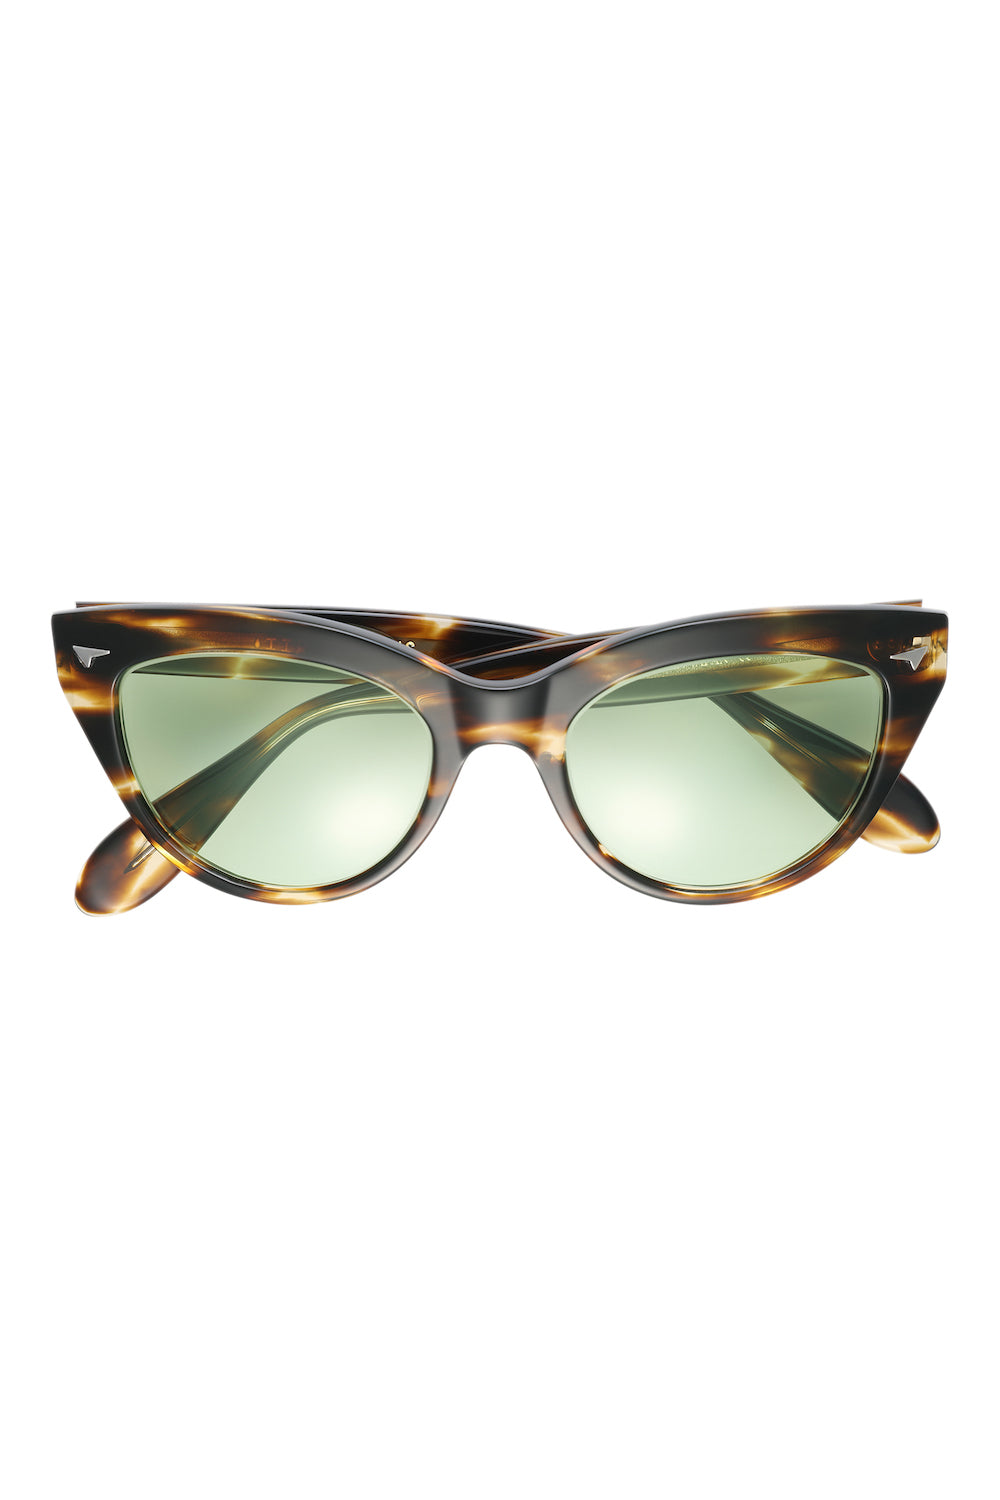 AE0004 Eyewear ”Hep Cat” -Brown Frame-